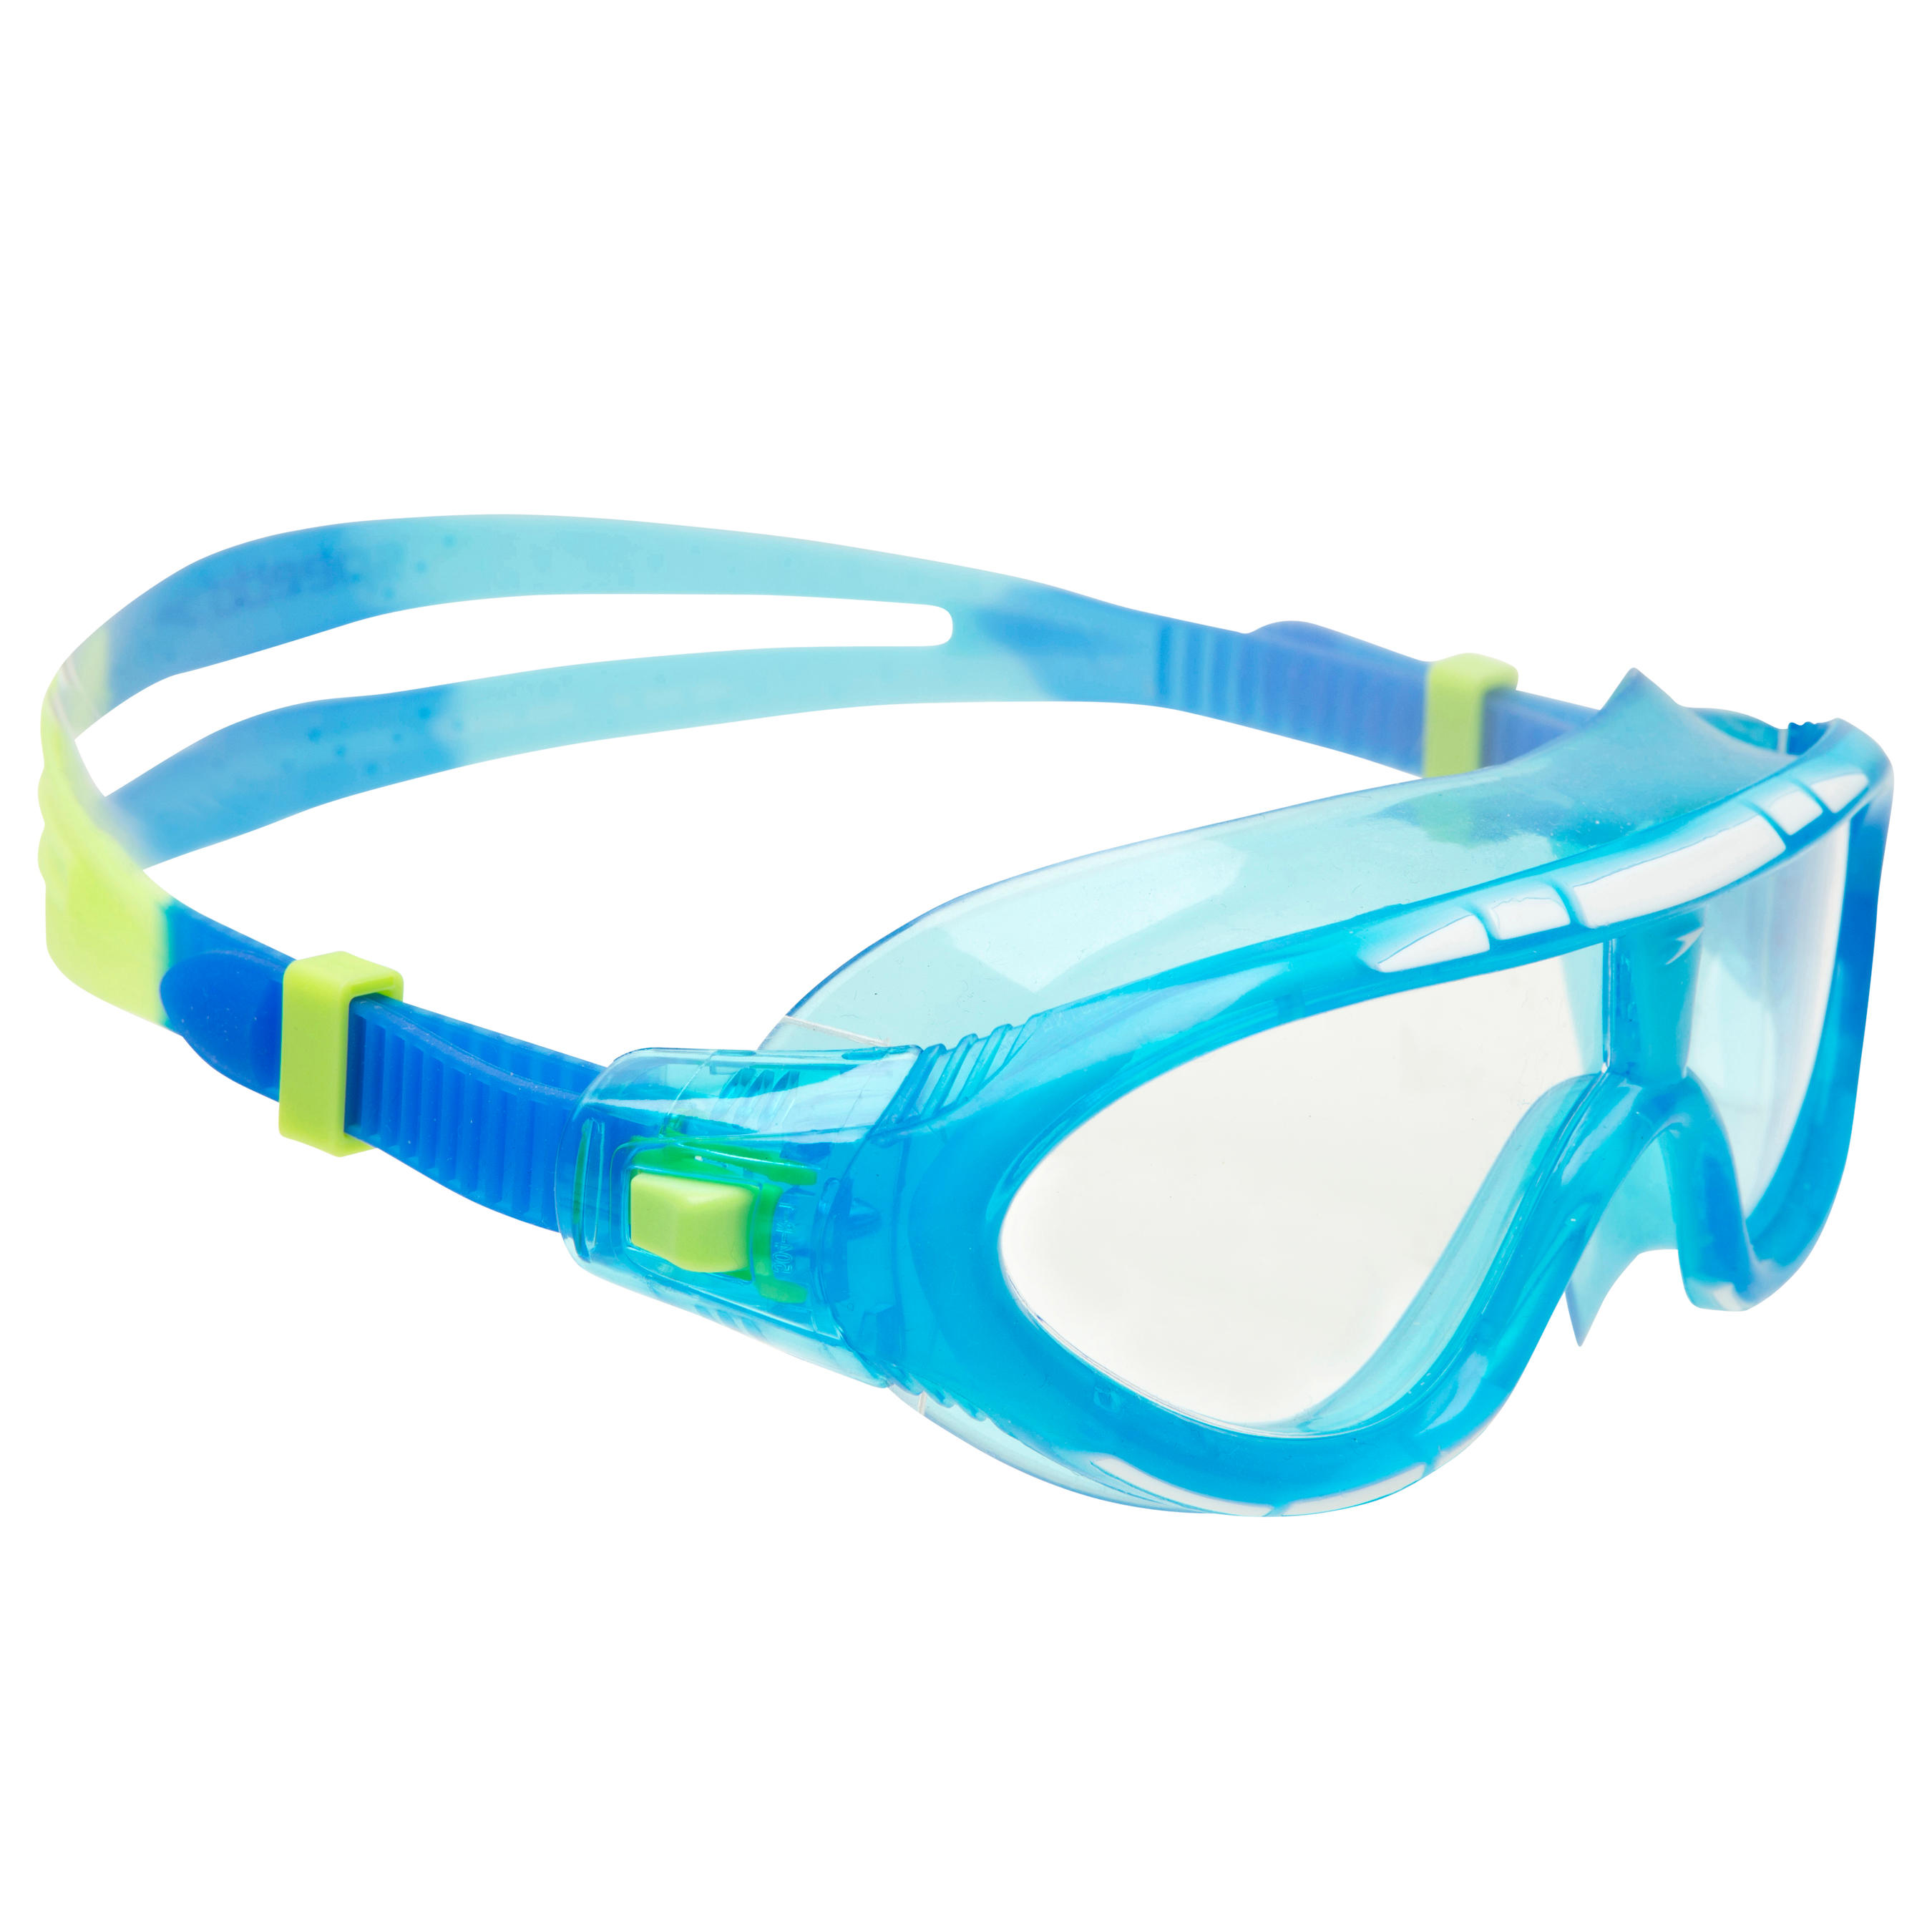 1 X Wassersport Schwimbrille,Taucherbrille,Clohrbrille für Kinder von 4-10 